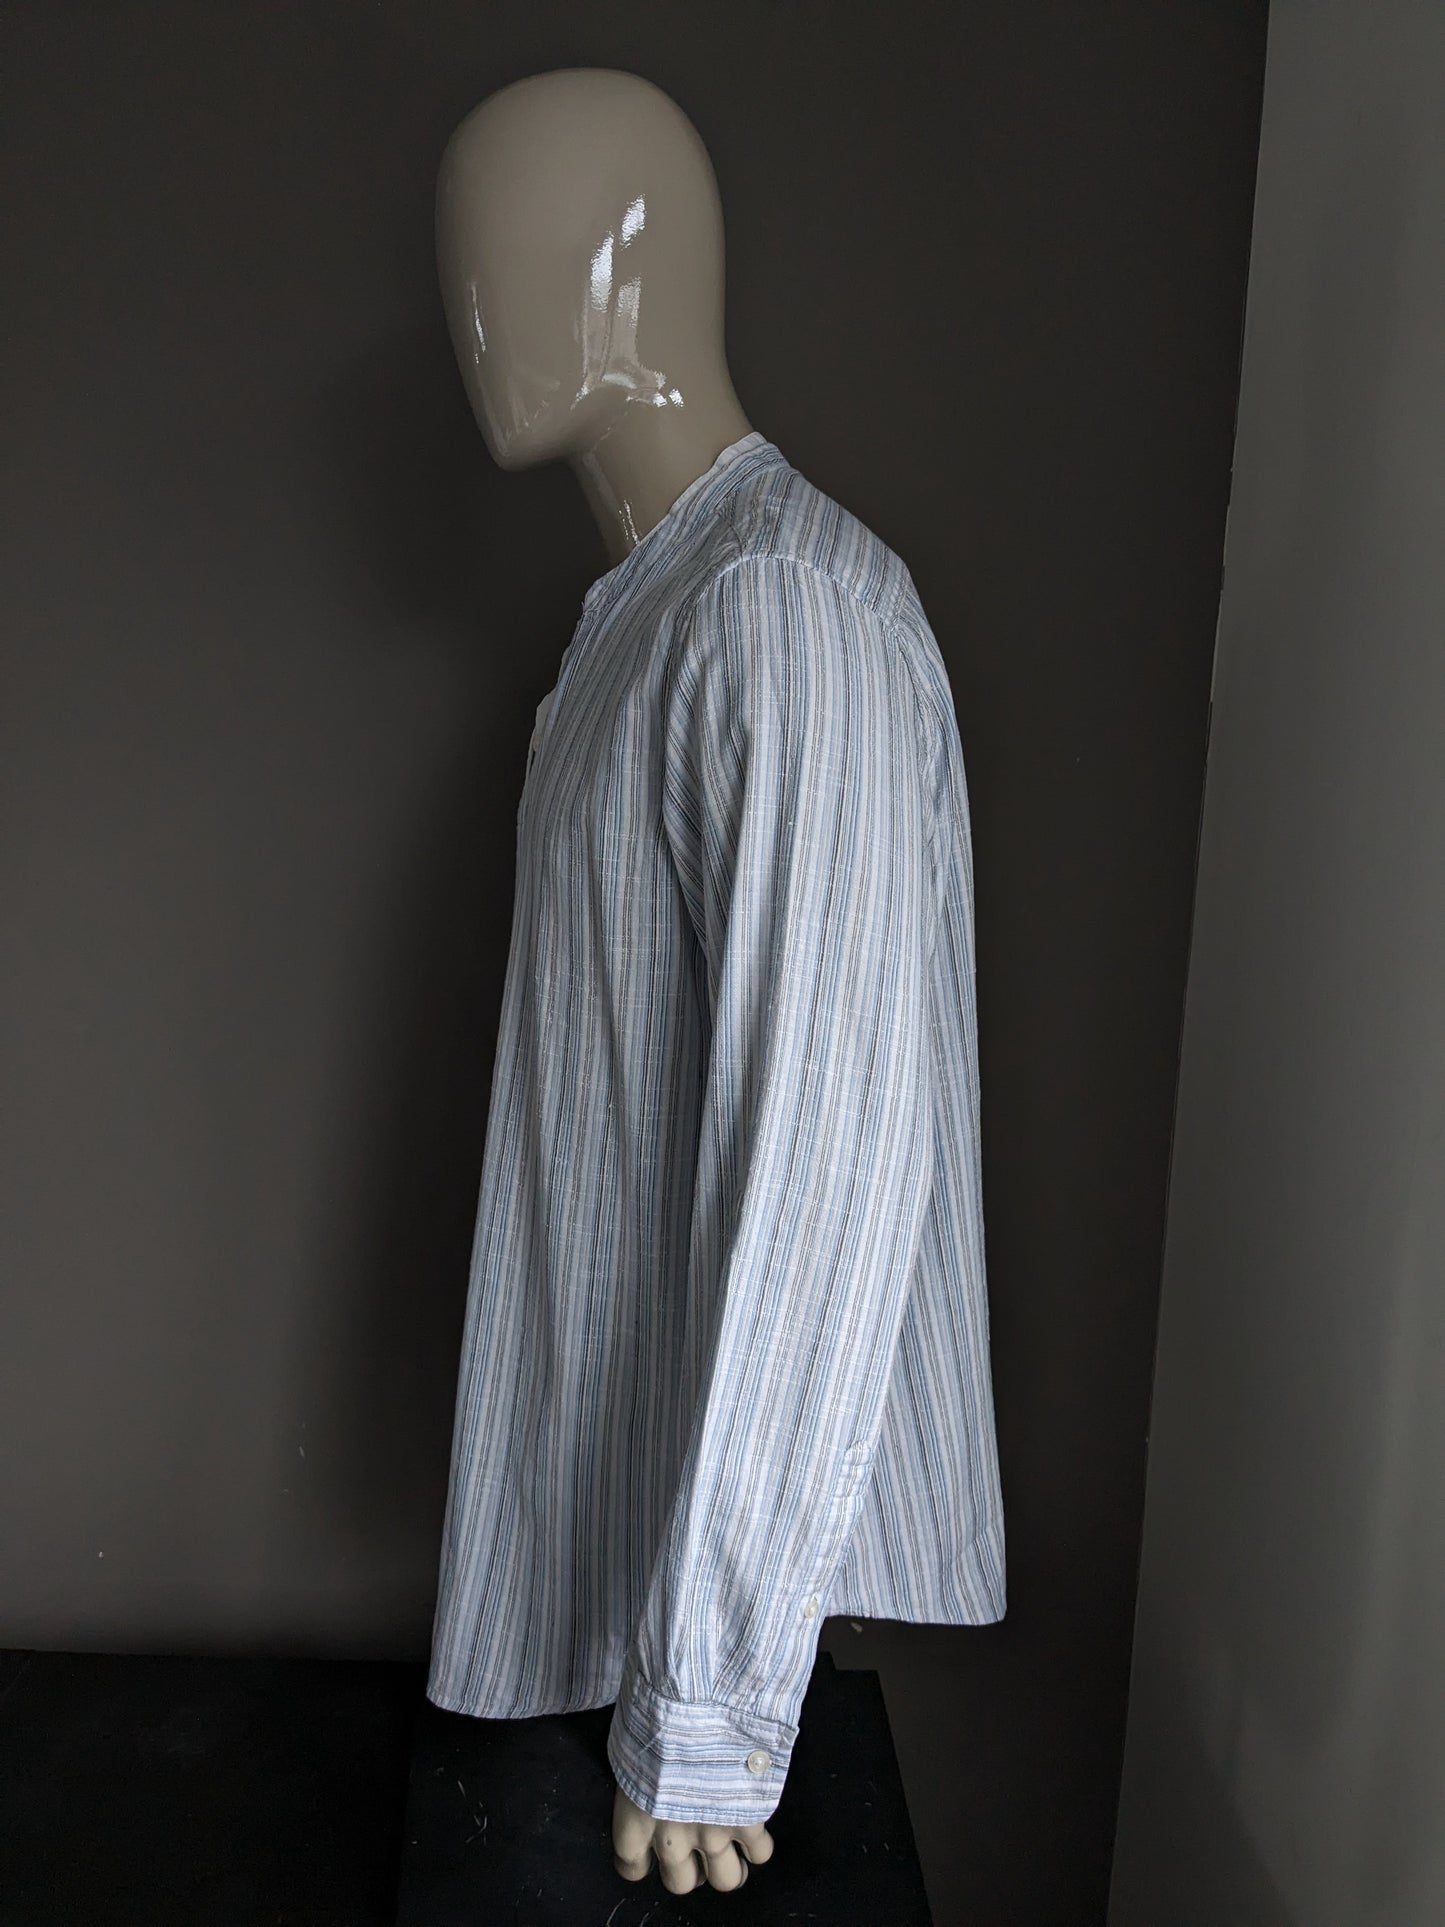 Chemise / chemise de cherokee vintage avec mao / col levé. Gris blanc bleu rayé. Taille xl.